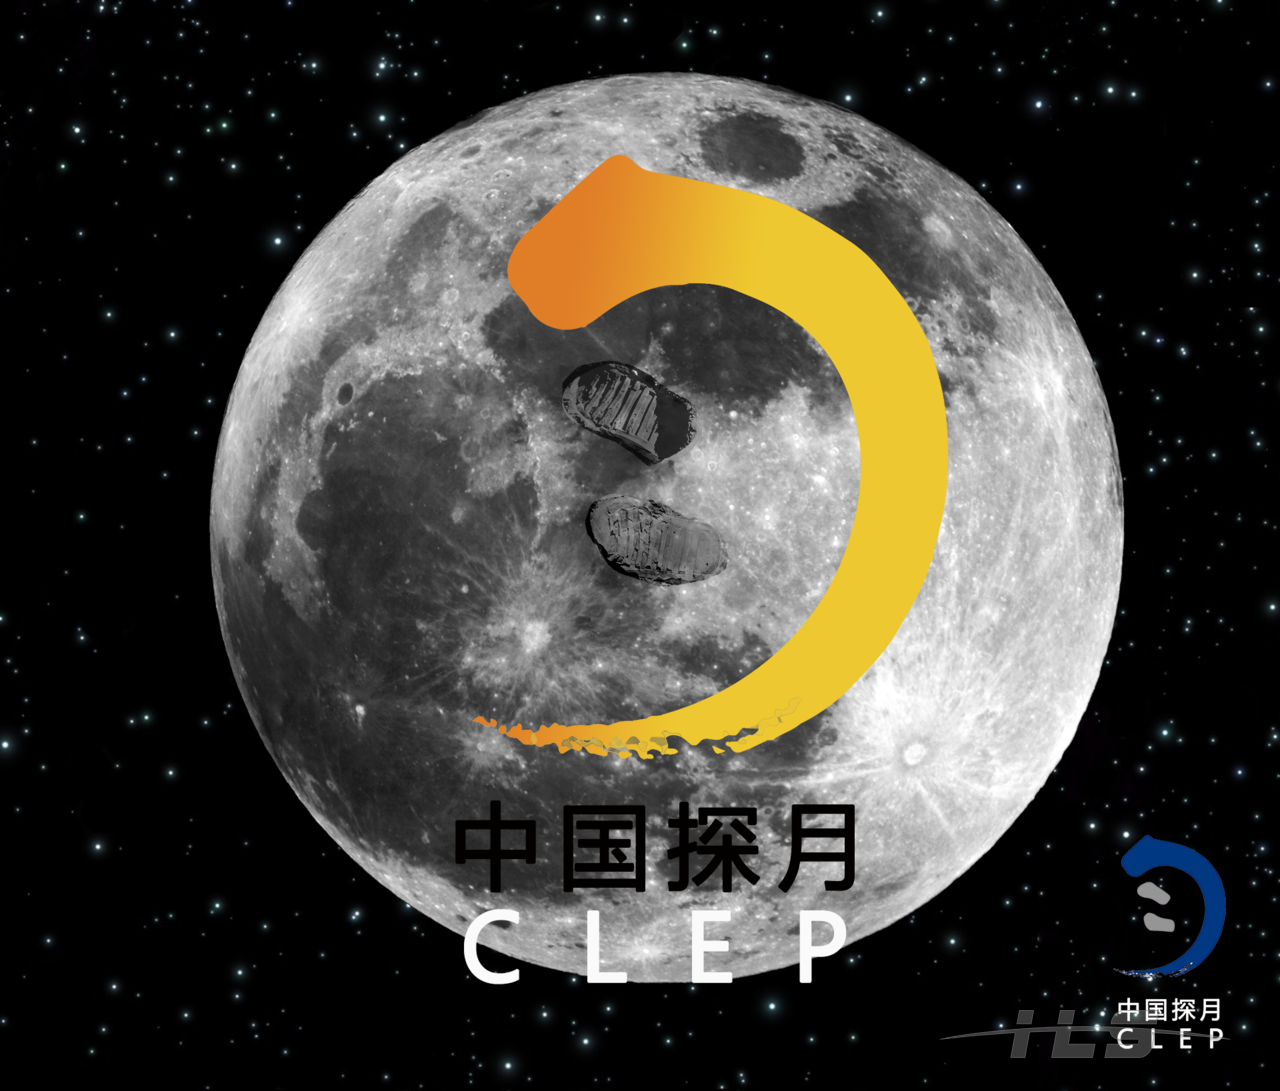 中国探月clep嫦娥一号演练嫦娥一号发射升空嫦娥一号嫦娥一号变轨示意